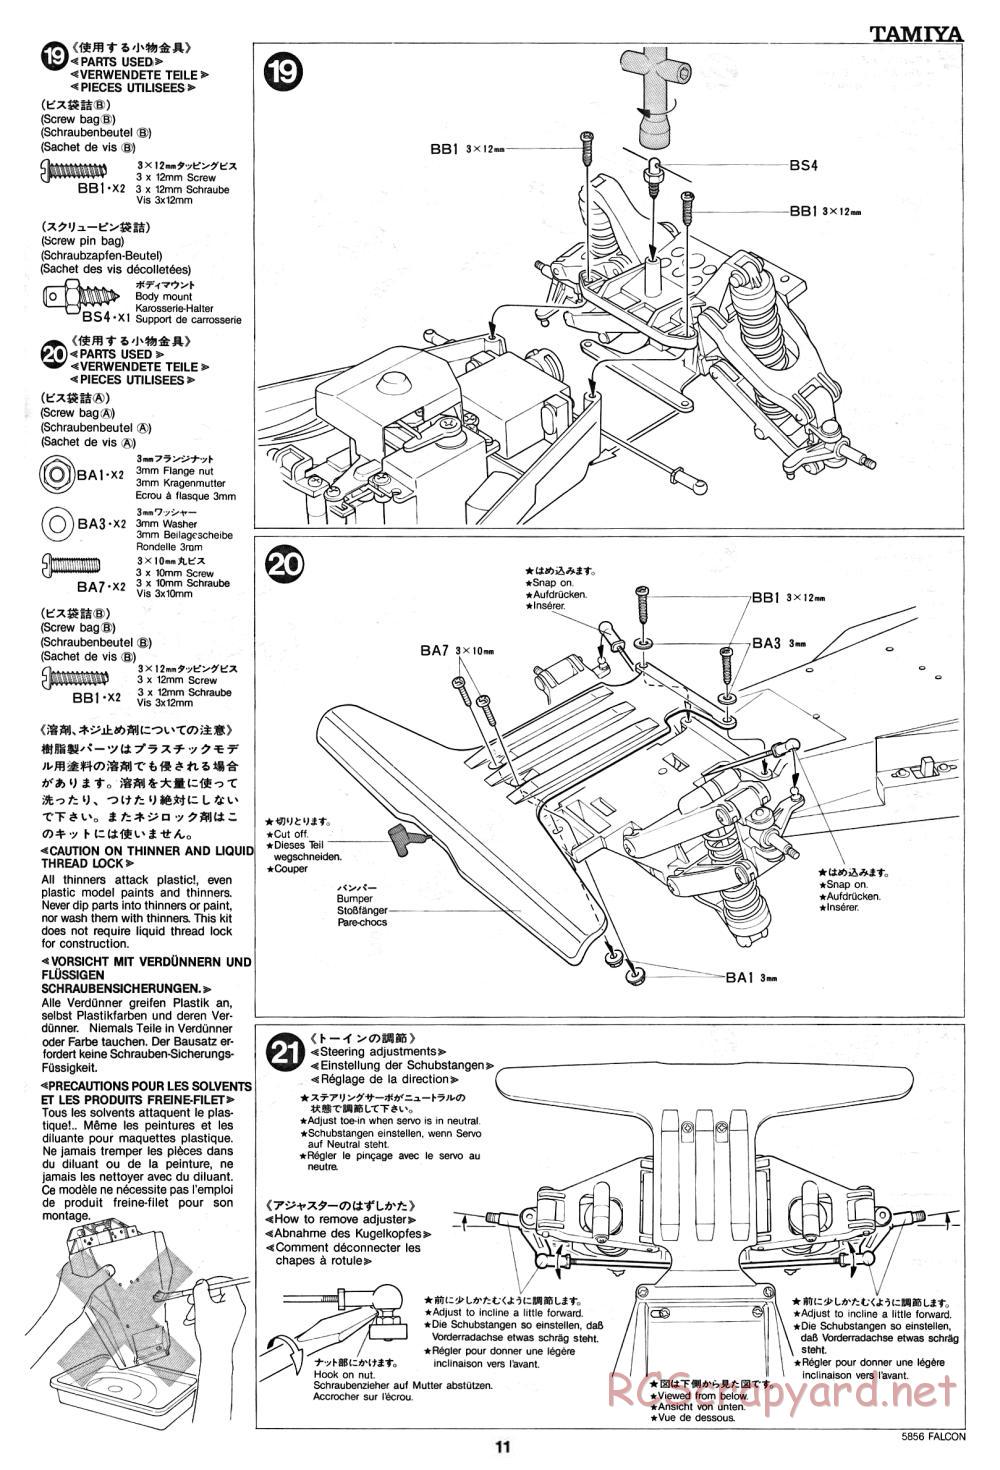 Tamiya - The Falcon - 58056 - Manual - Page 11